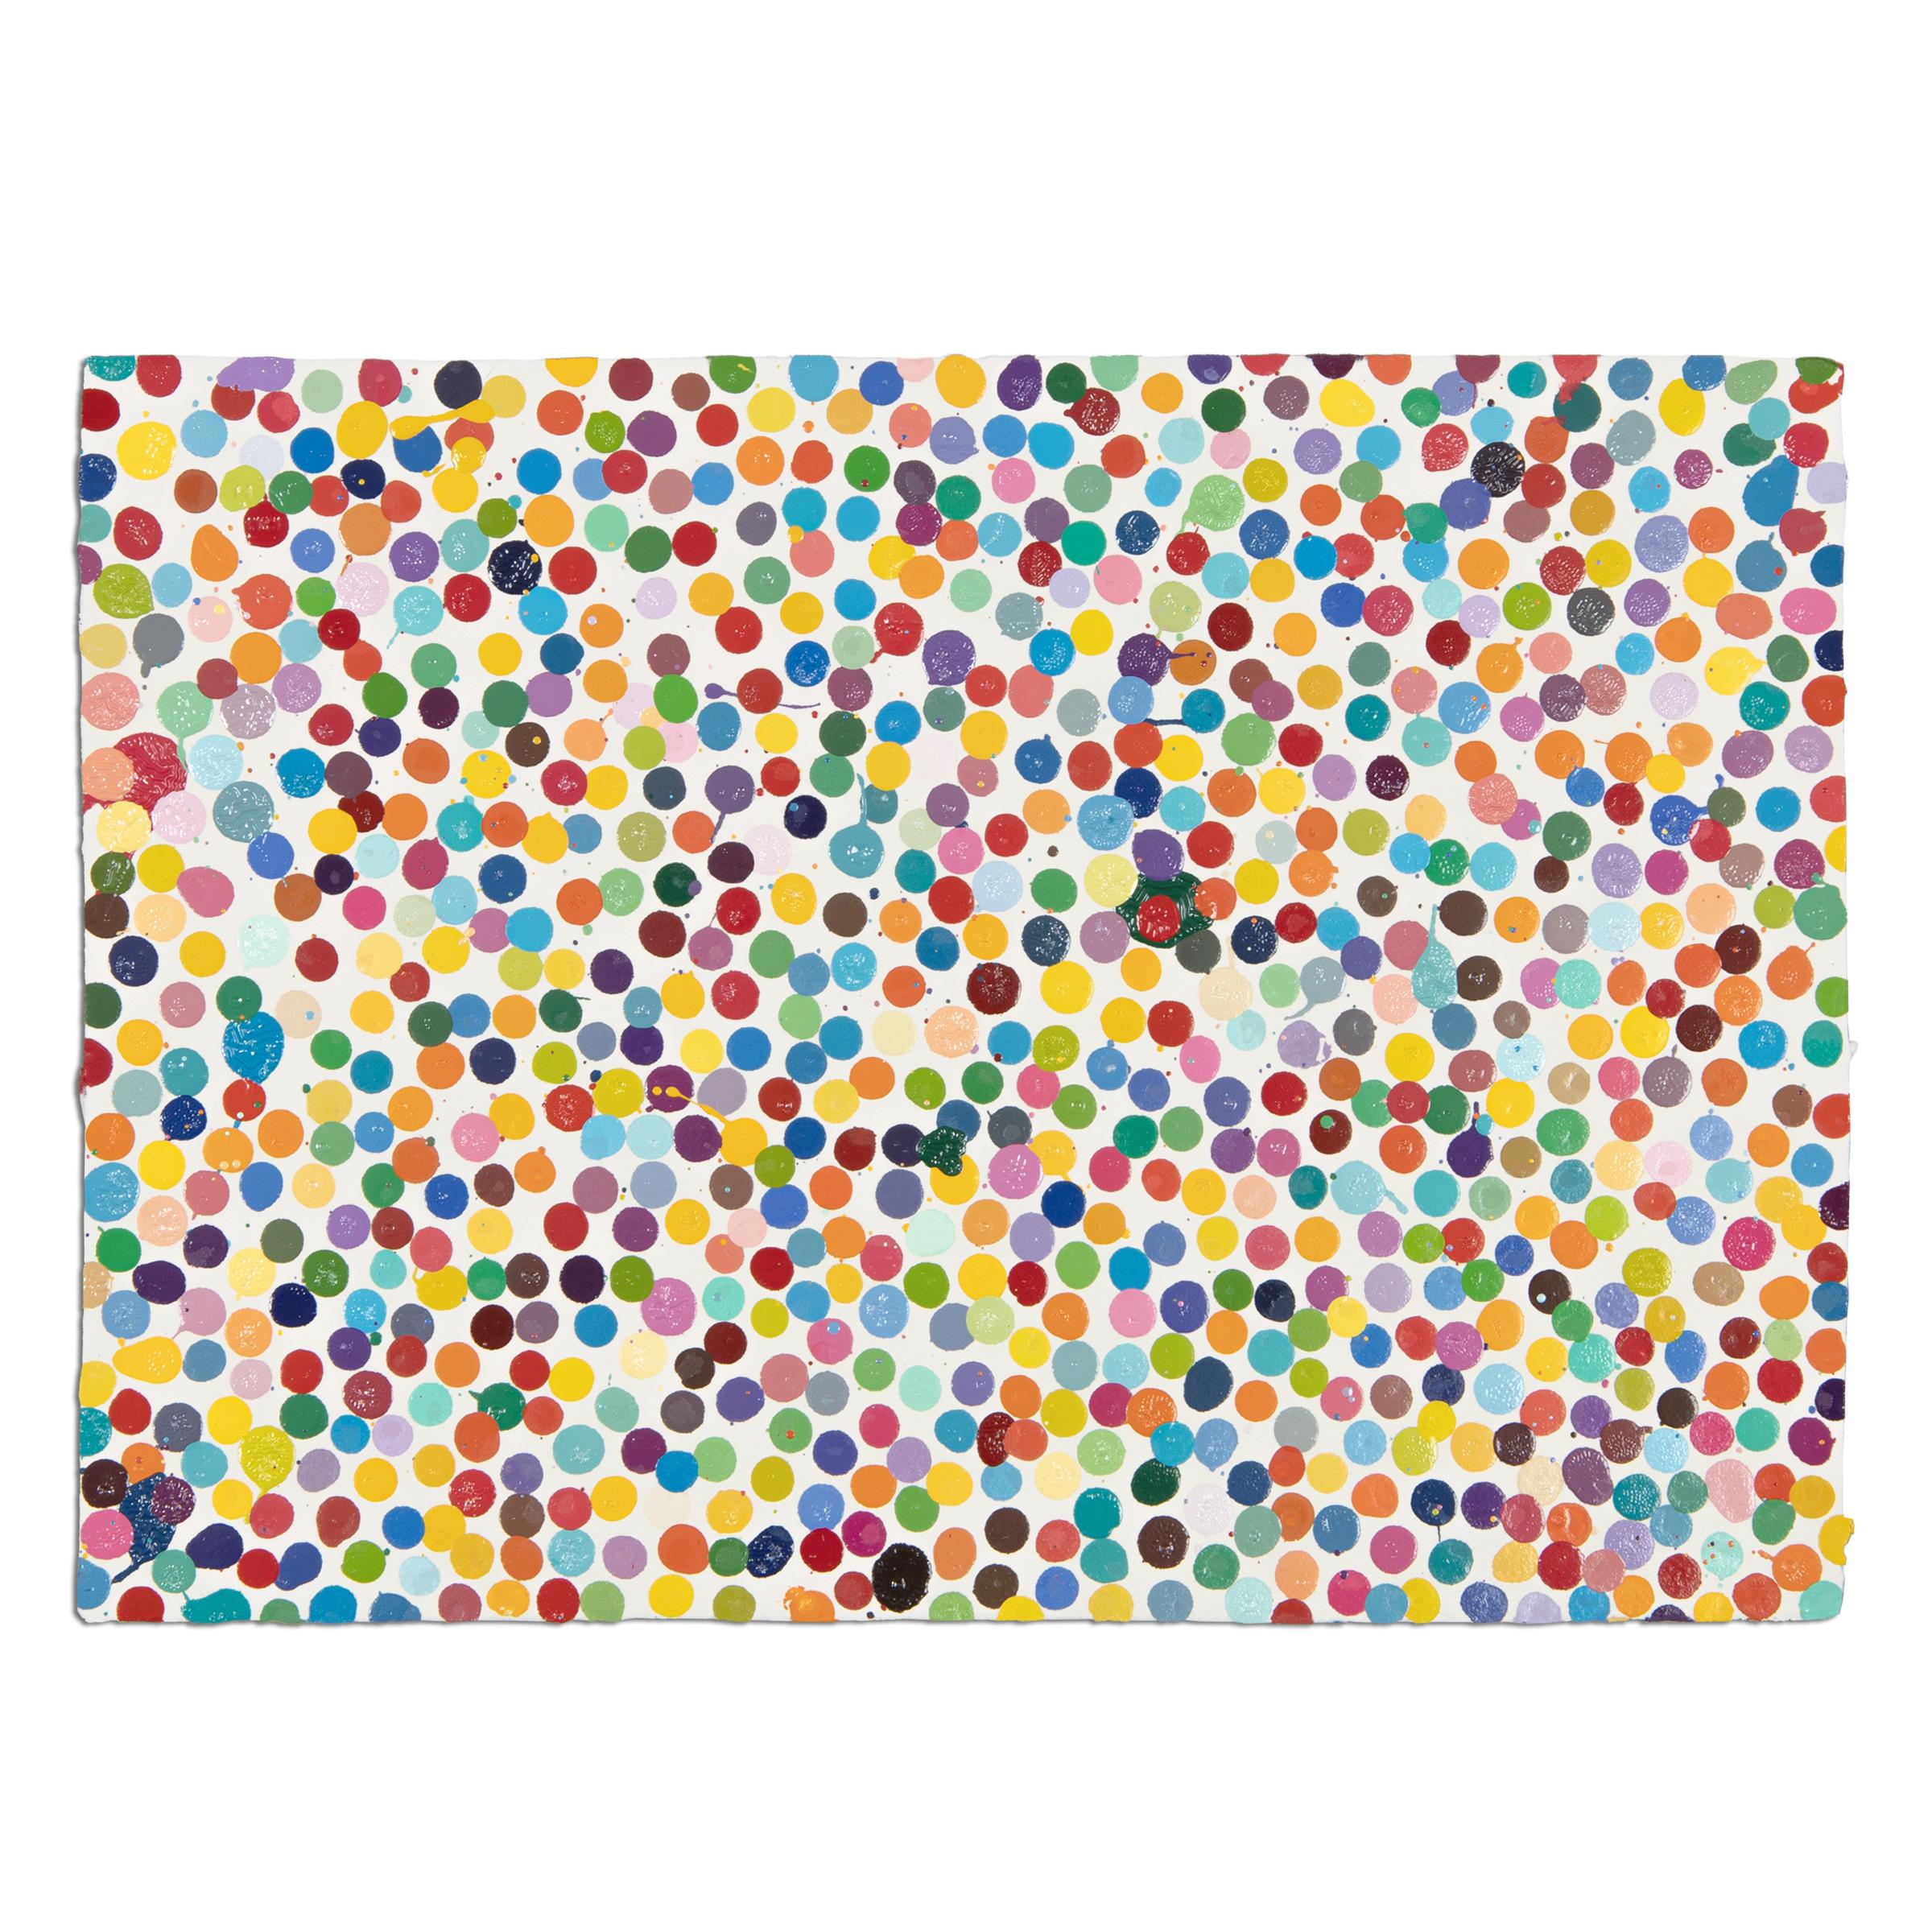 Damien Hirst (Brite, geboren 1965)
Und wissen Sie es?  (Die Währung), 2016
Medium: Emaillefarbe auf handgeschöpftem Papier
Abmessungen: 20 x 30 cm (7,8 x 11,8 Zoll)
Serie: Einzigartige Variante aus der Serie The Currency von 5.149
Markierungen: